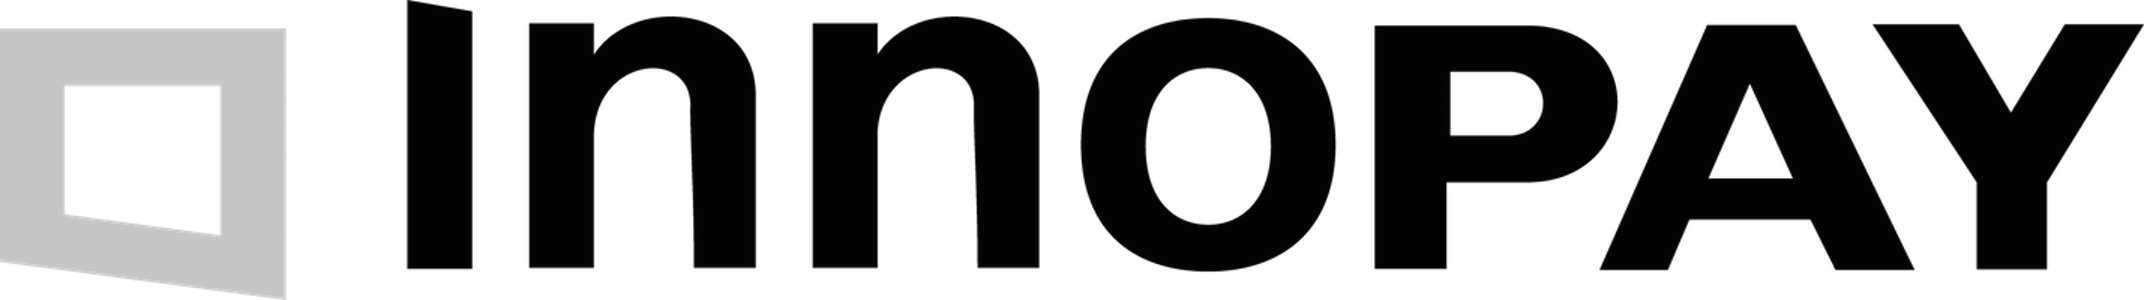 Innopay logo